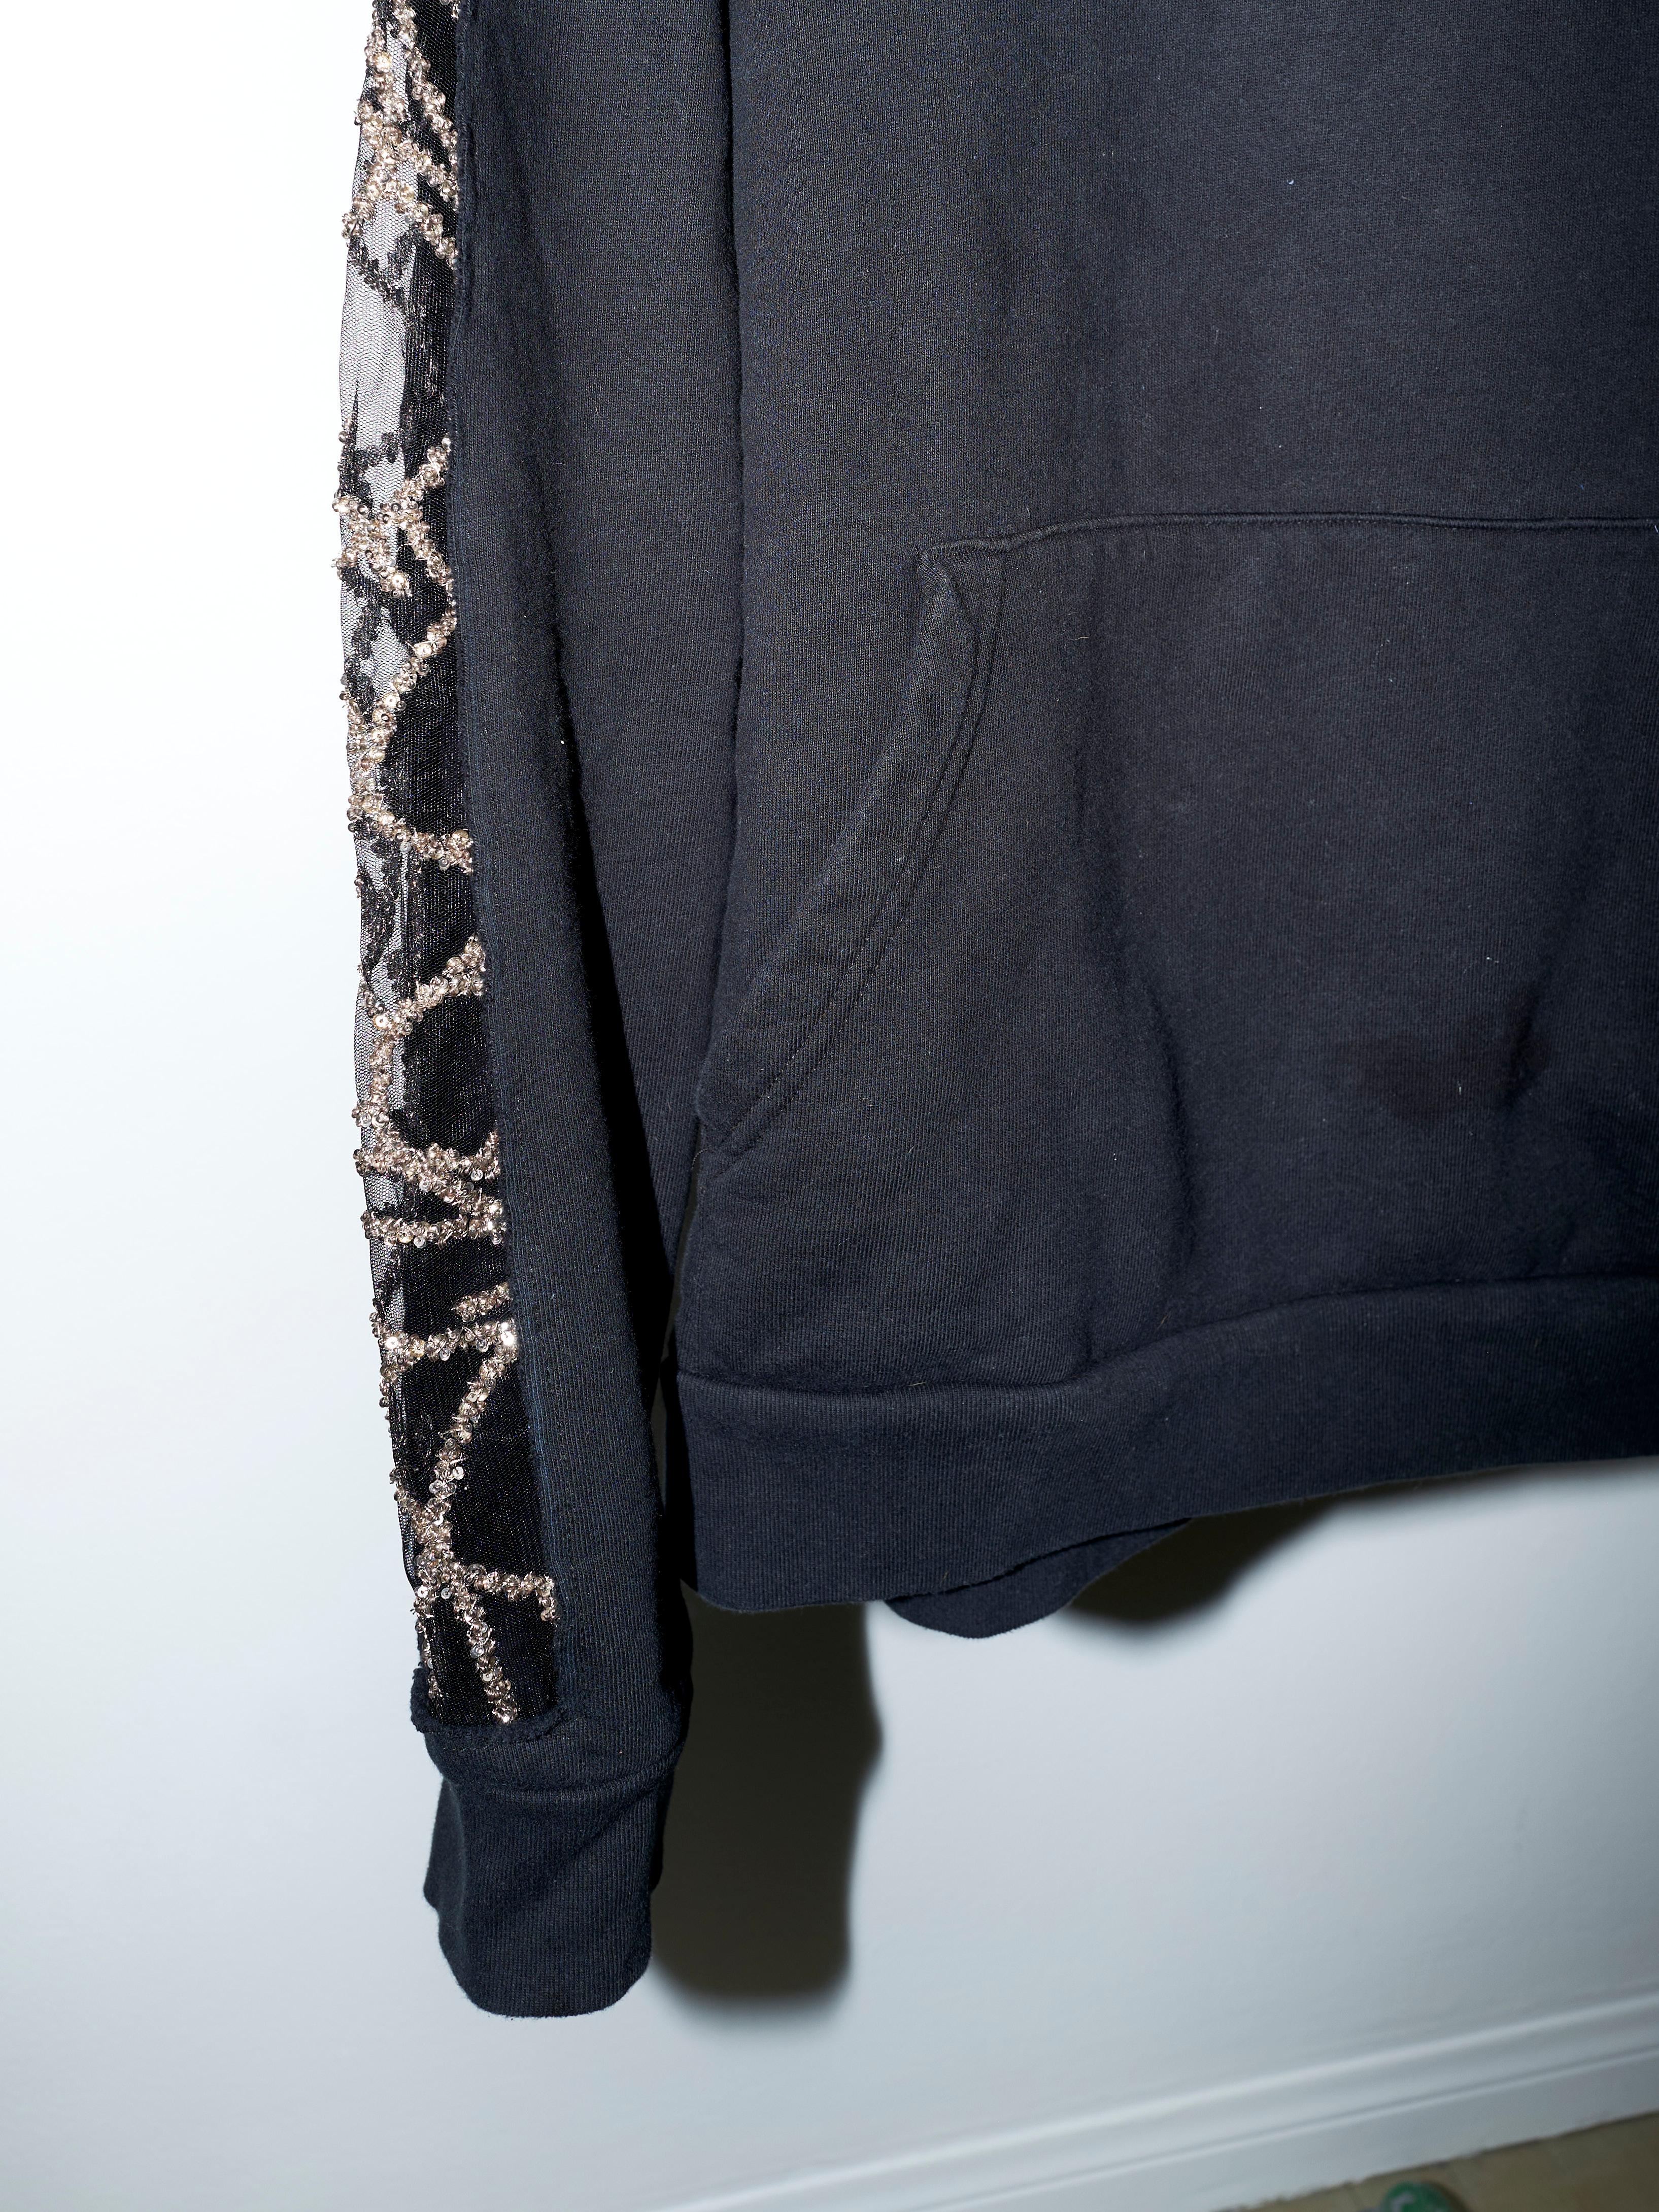 Black Hoodie Sweatshirt Transparent Sheer Mesh Chrystal Embroidery J Dauphin For Sale 4